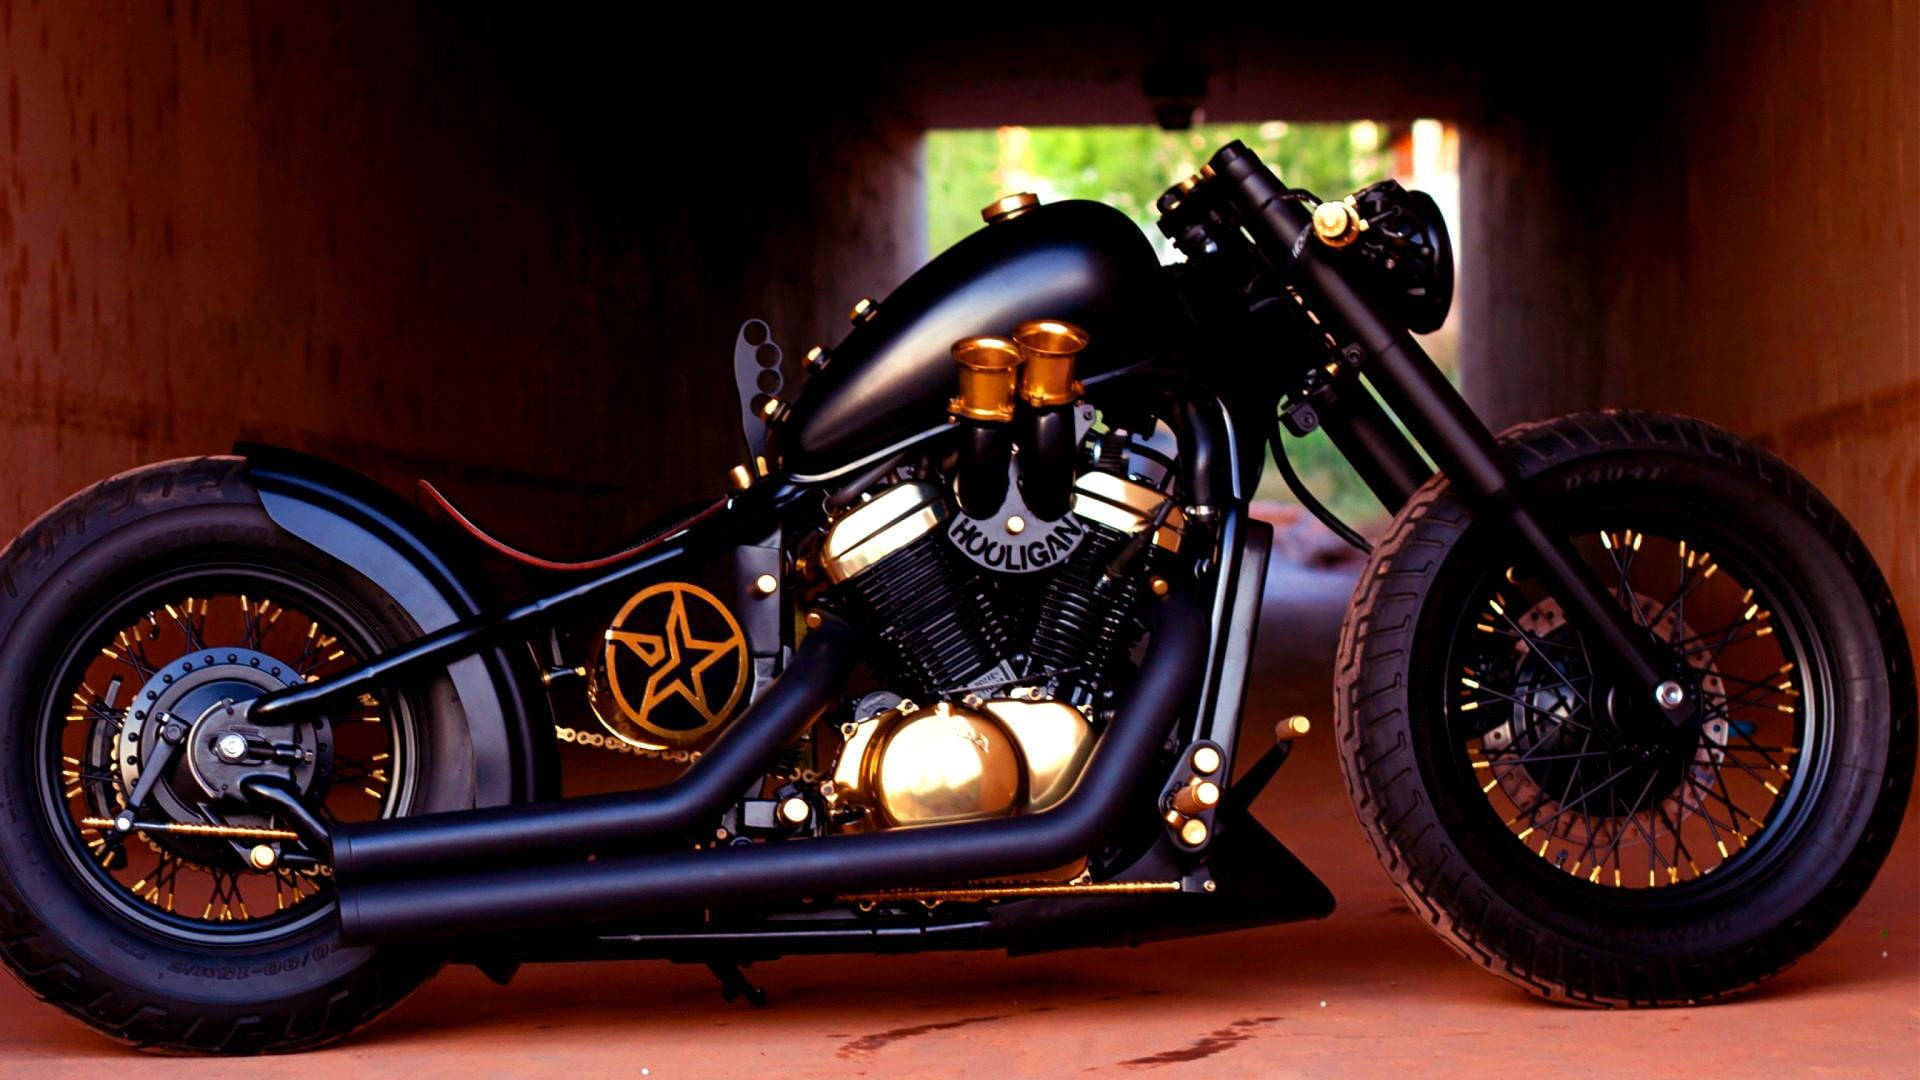 honda shadow bobber motorcycle